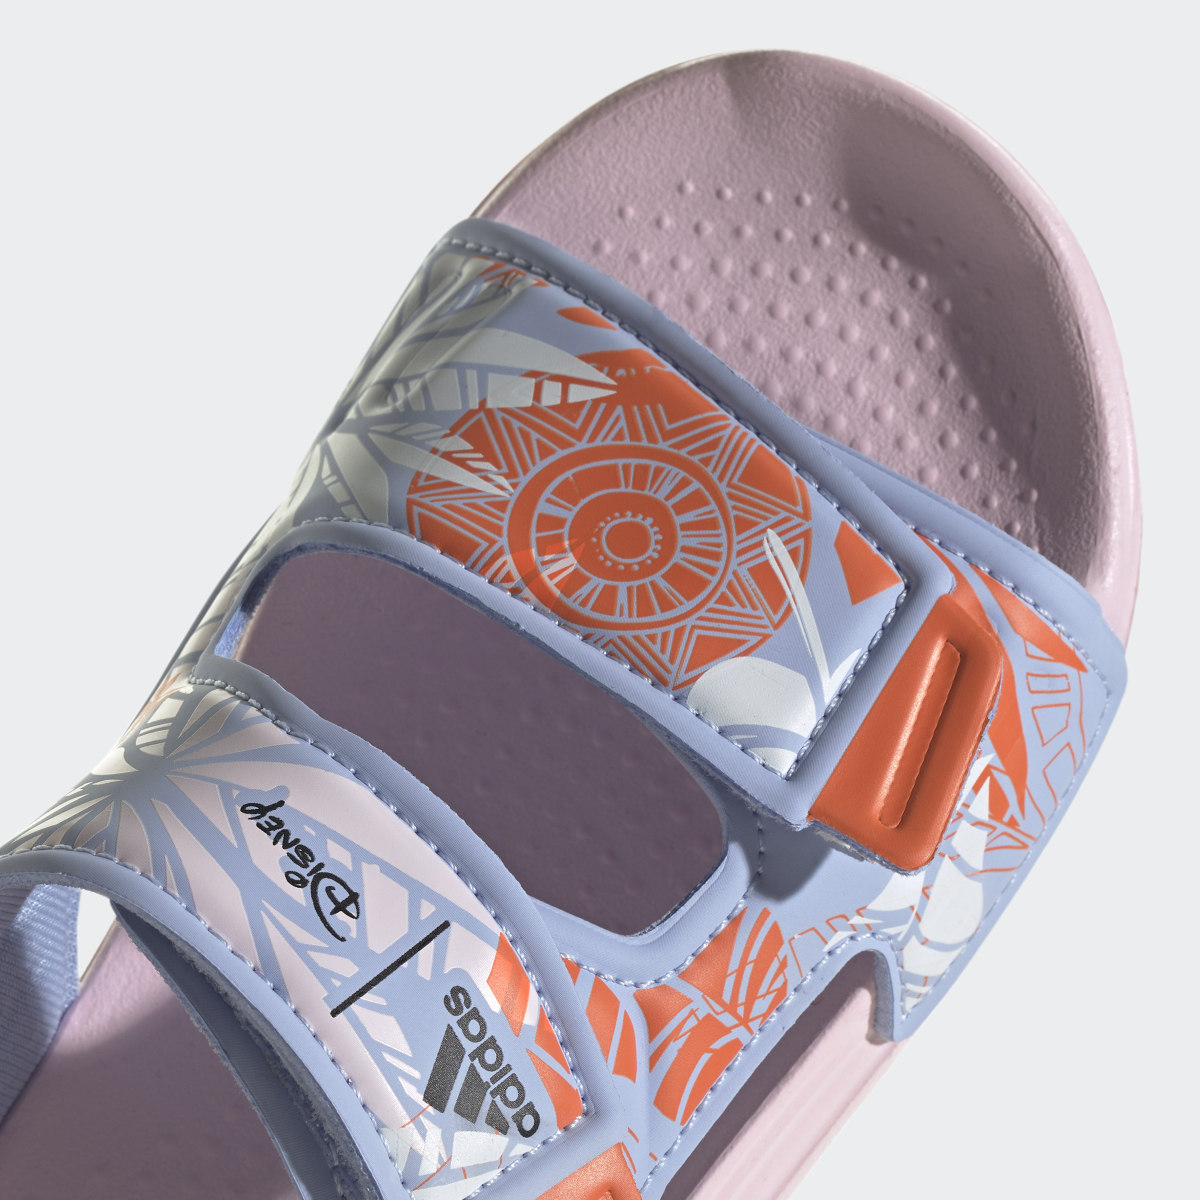 Adidas Sandálias de Natação AltaSwim Vaiana adidas x Disney. 10